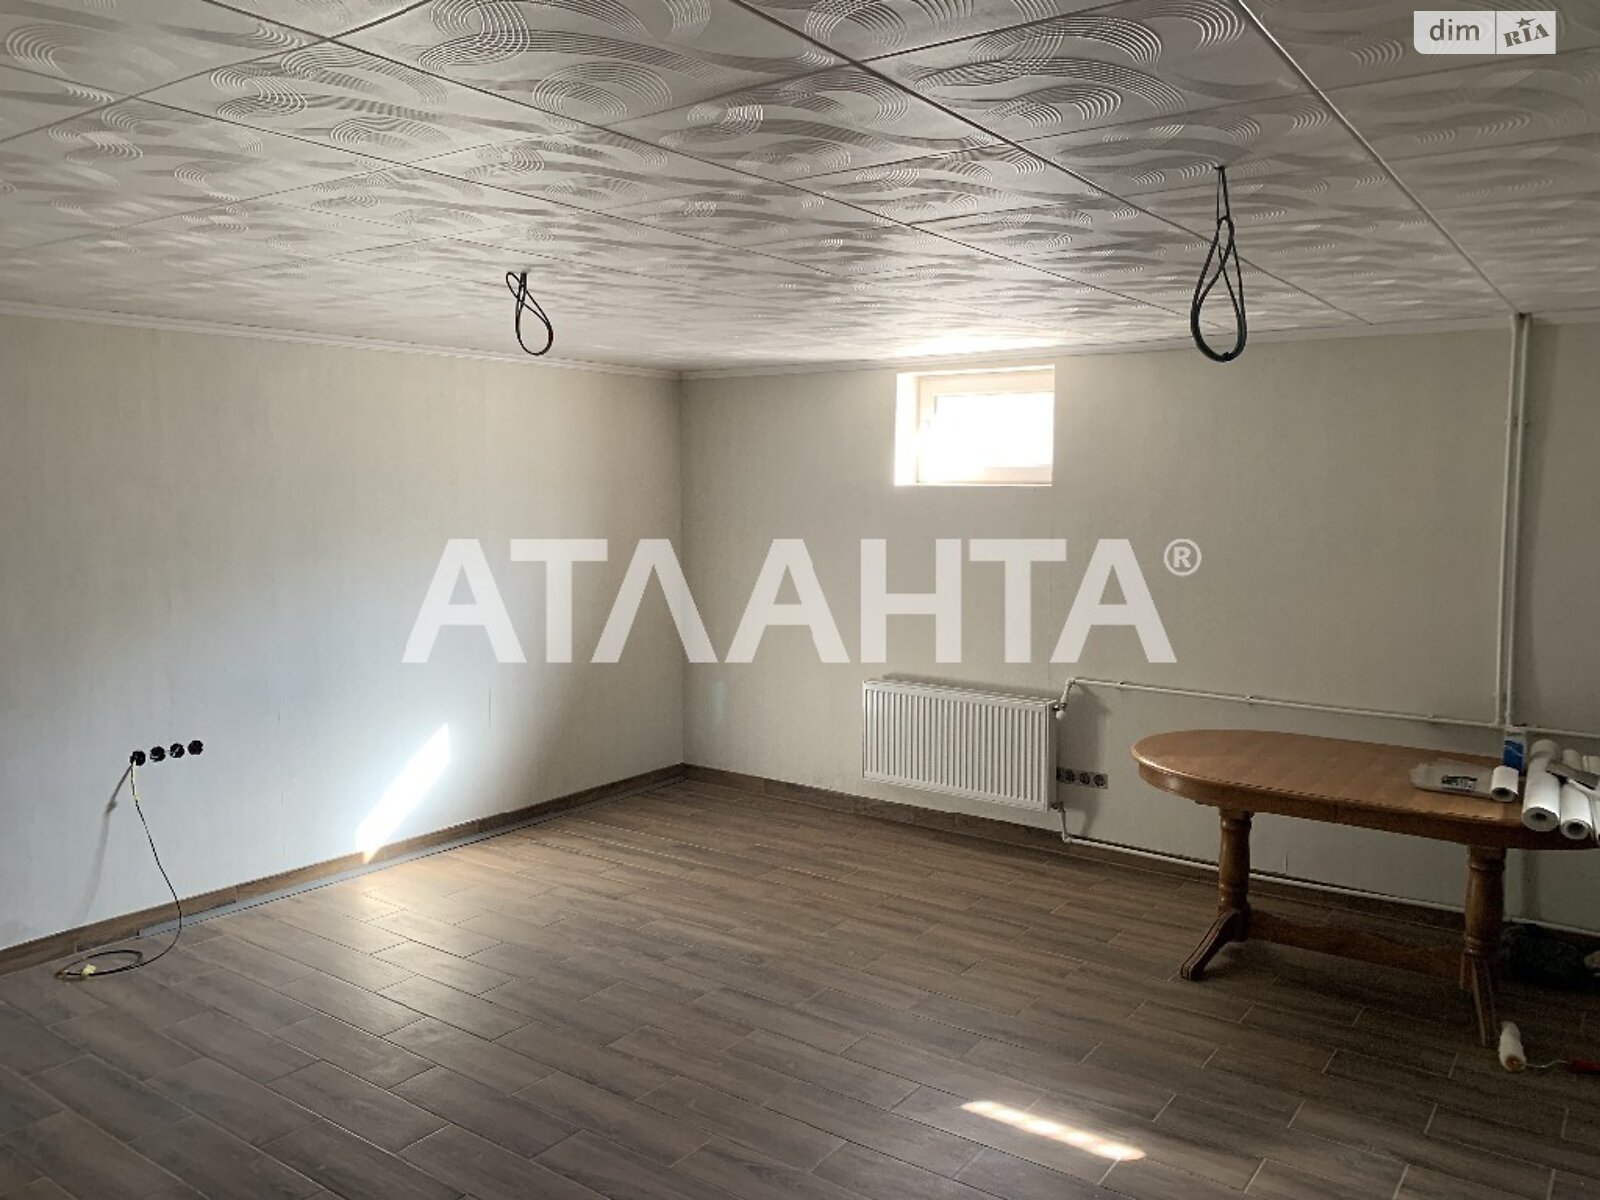 Продажа части дома в Одессе, улица Ромашковая, район Чубаевка, 3 комнаты фото 1